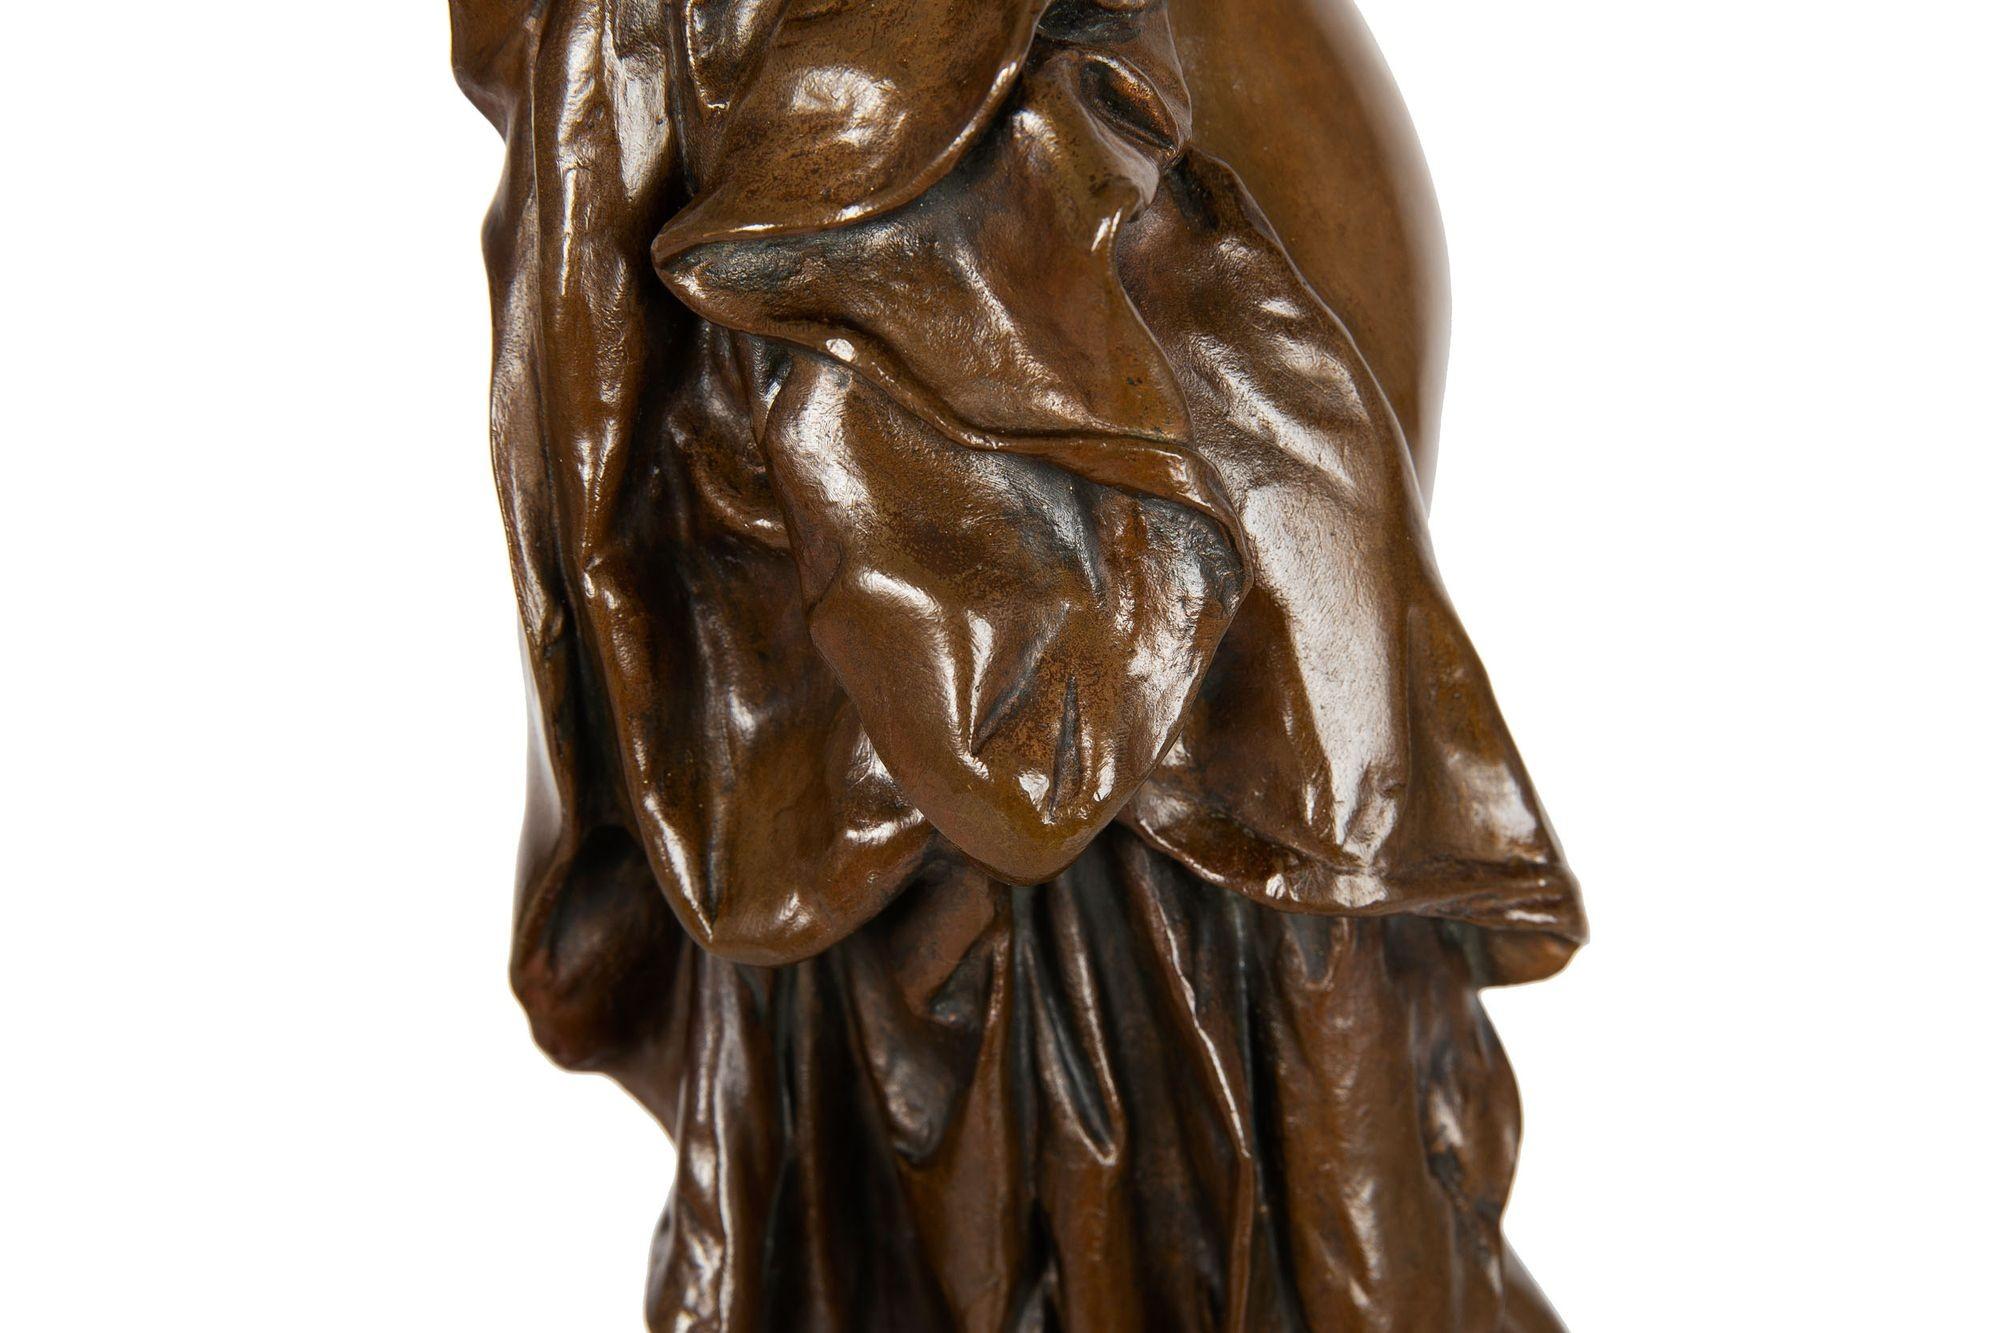 German Art Nouveau Bronze Sculpture “the Ball Player” by Walter Schott 13